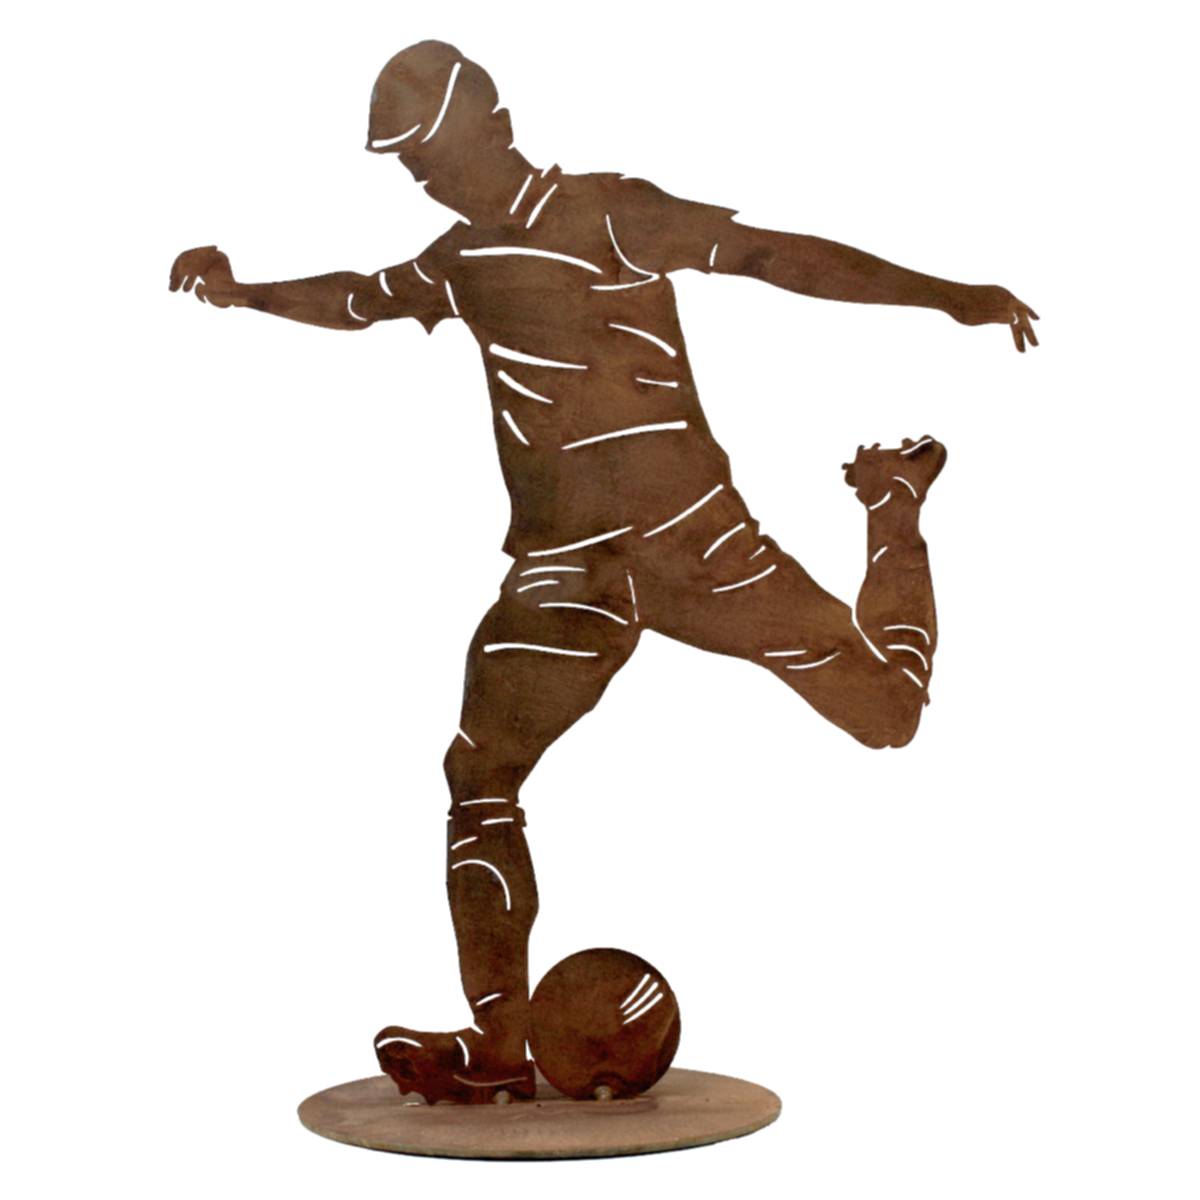 Rostiger Fußballer Metallfigur, dekorative Silhouette, Gartendeko für Fußballfans, sportliche Dekoration